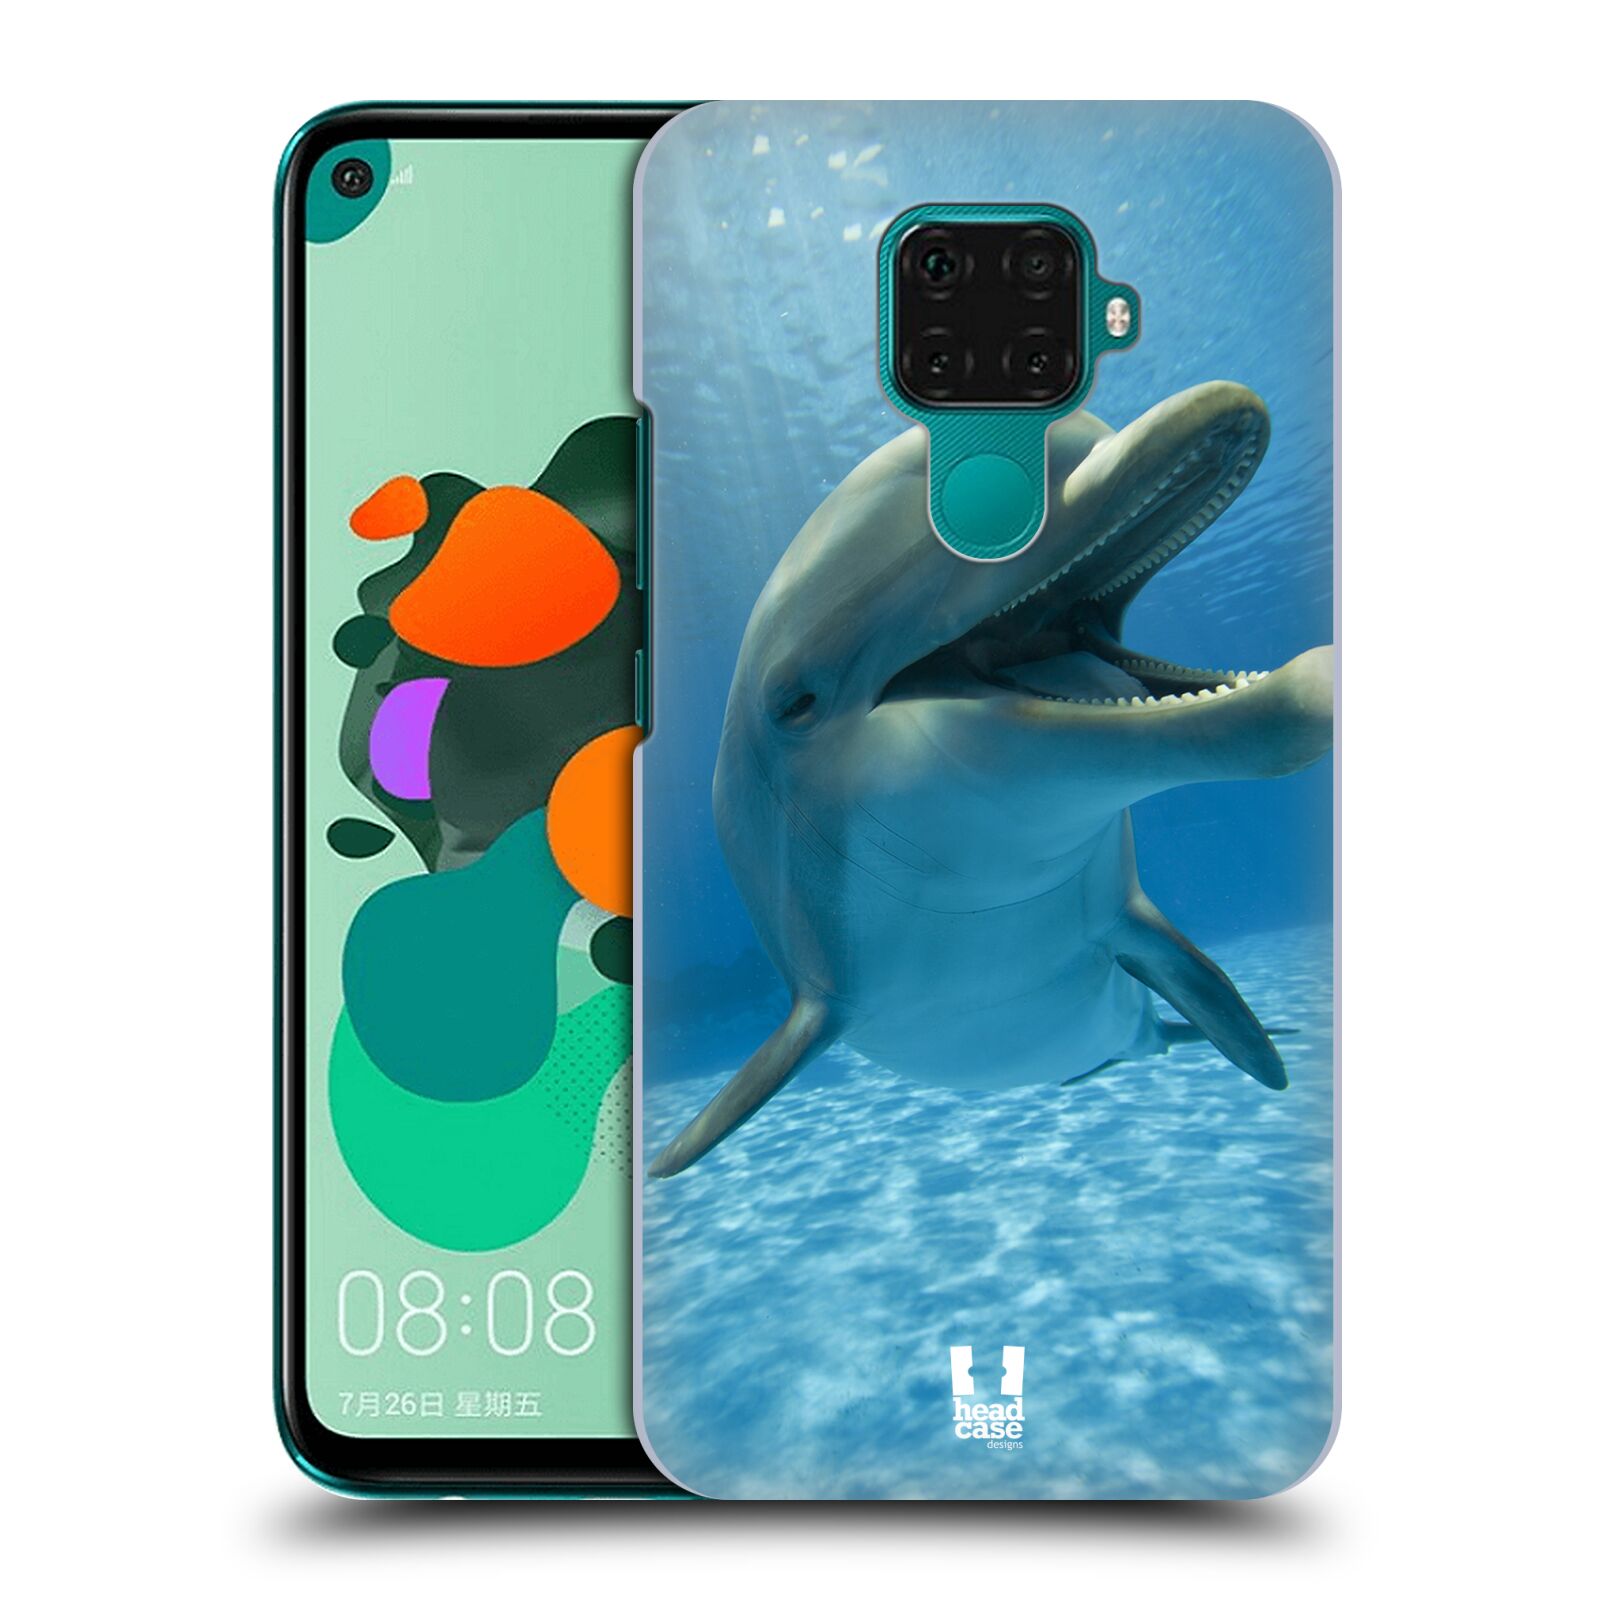 Zadní obal pro mobil Huawei Mate 30 LITE - HEAD CASE - Svět zvířat delfín v moři